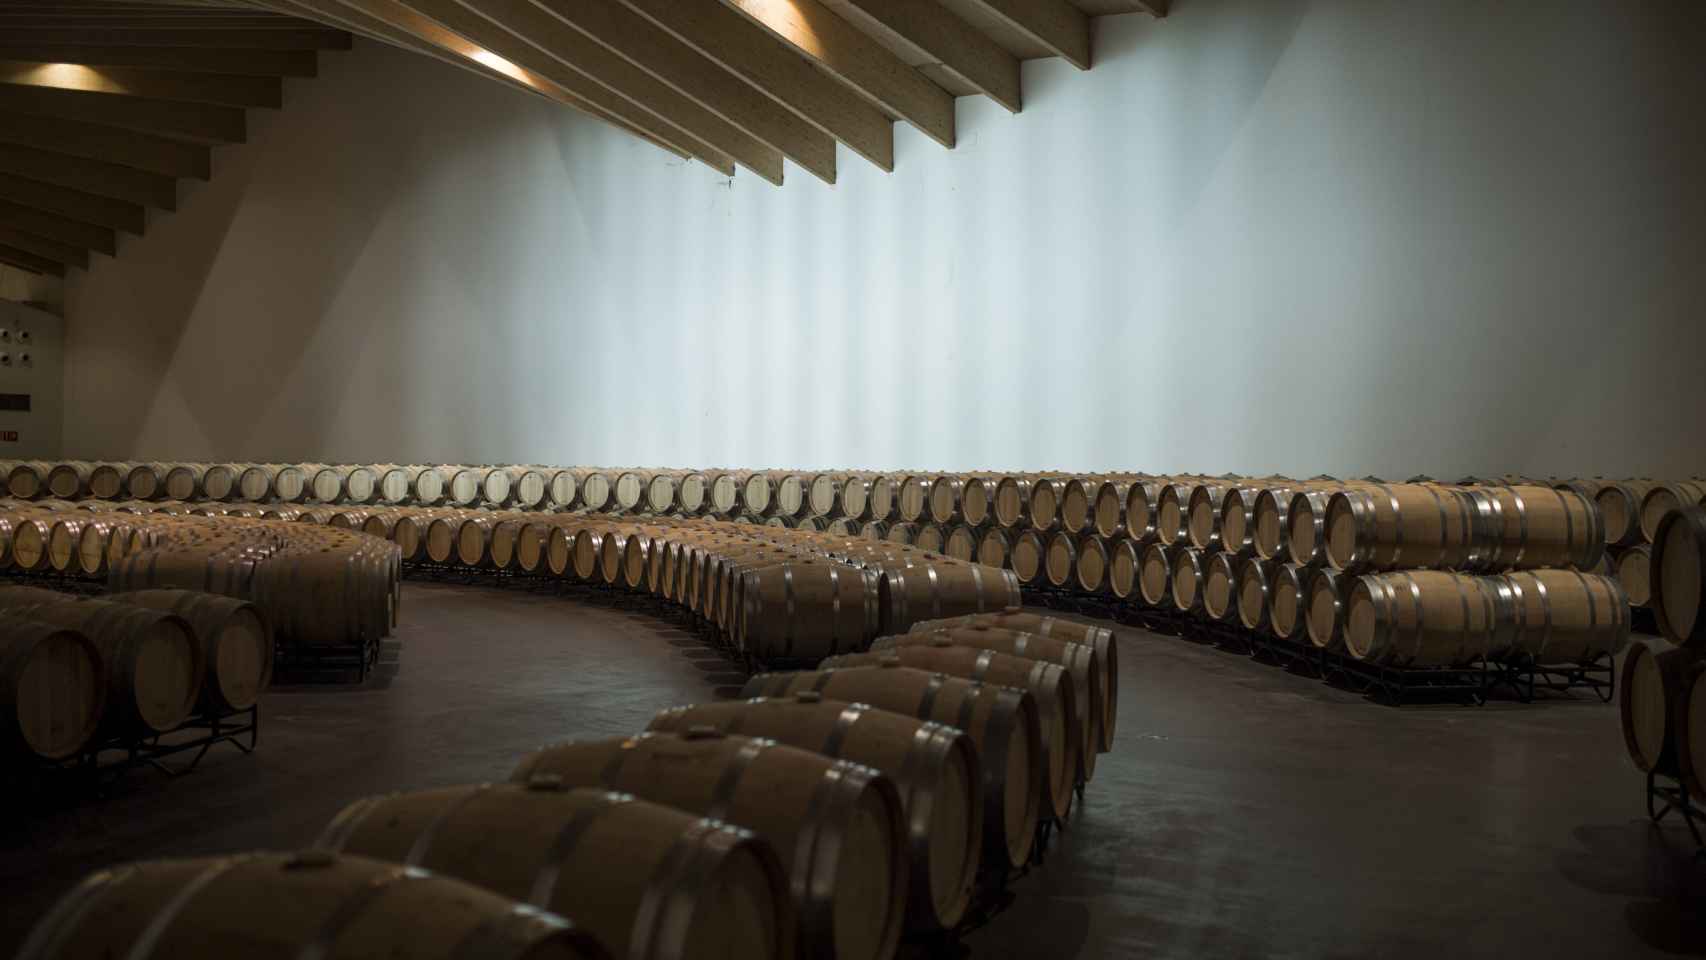 La bodega tiene capacidad para albergar casi 10 veces más de las barricas que contiene en la actualidad. Ysios tiene cada año una corta edición de 3 vinos de venta exclusiva en bodega / A. VIRI